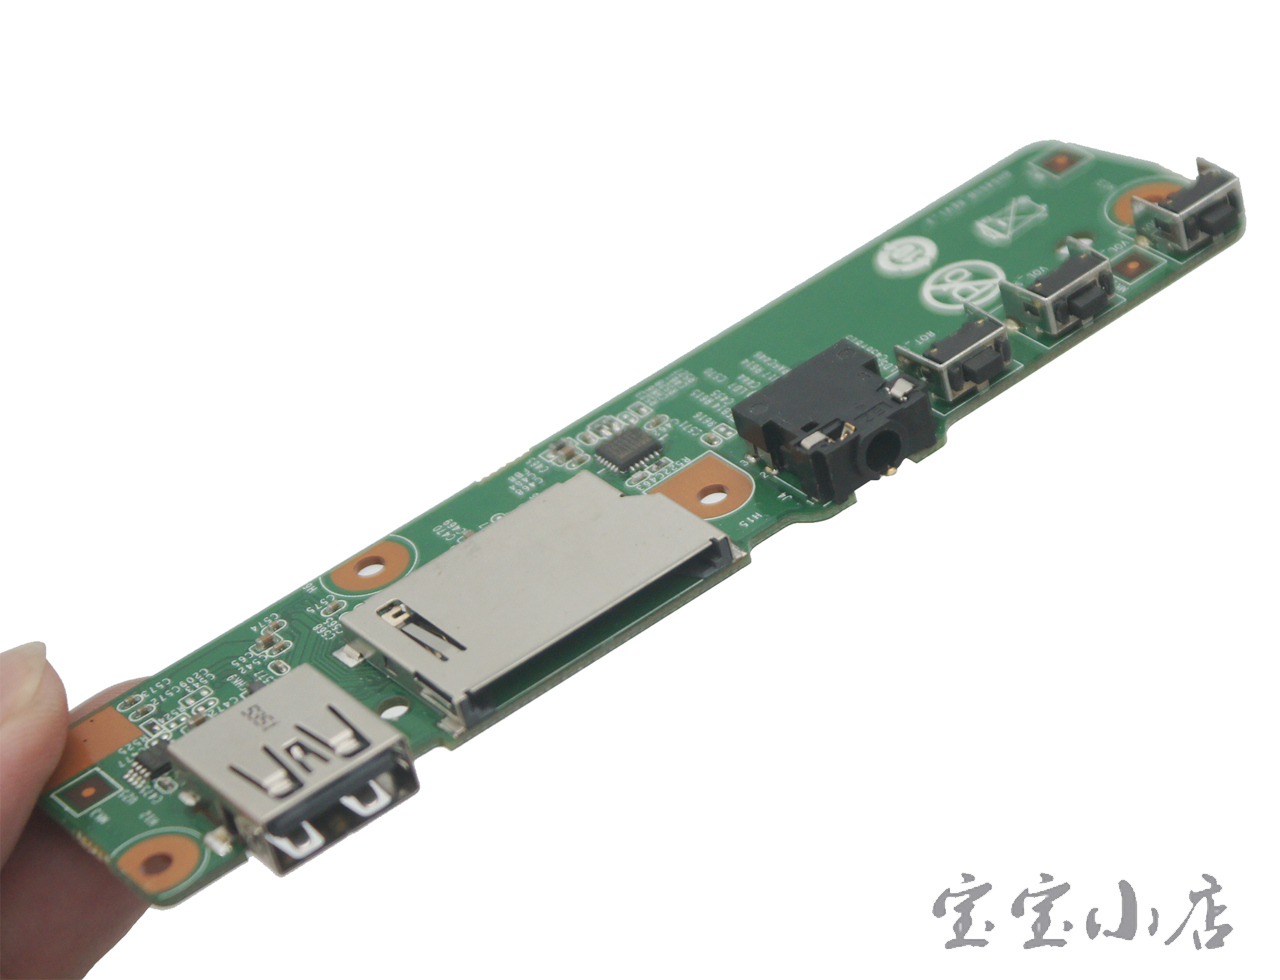 联想 FLEX3 1120 1130 YOGA300-11IBR开机小板 USB 耳机 SD读卡板 BH5455B REV 1.3